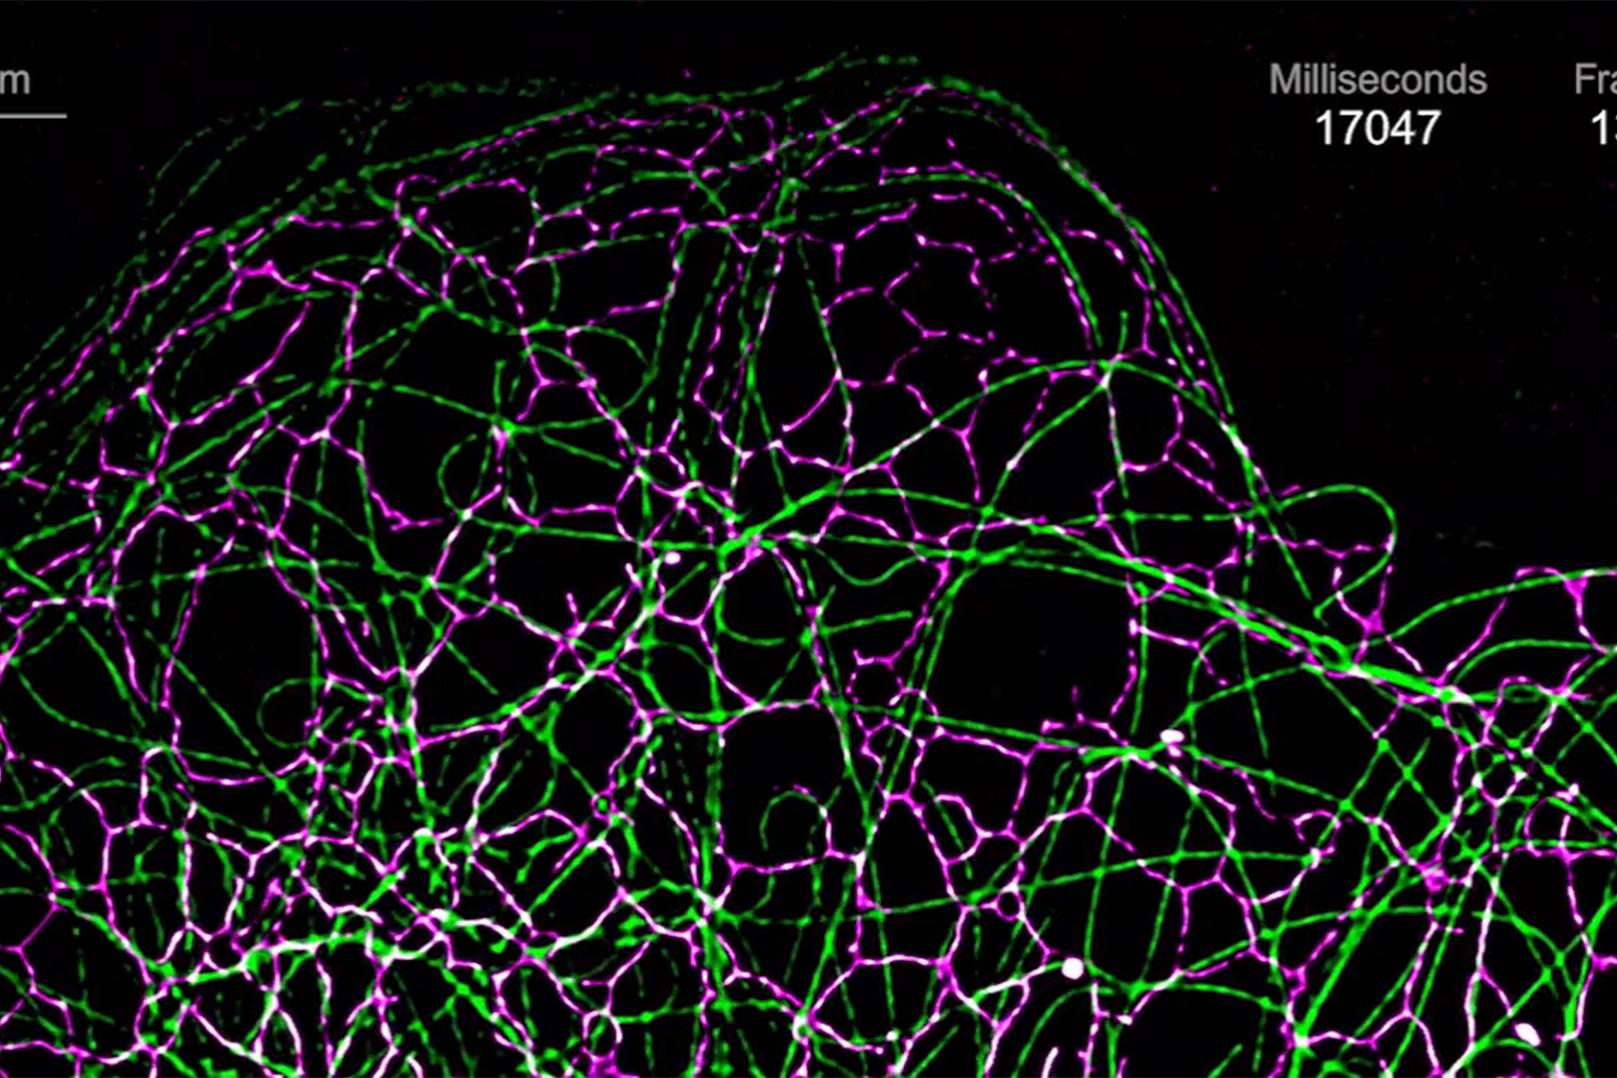 COS-7細胞の小胞体（カルレティキュリン-tdTomato、マゼンタ）と微小管（EMTB-3xGFP、緑）の同時イメージングにより、これらの細胞小器官のダイナミックな相互作用が明らかになりました。対物レンズ：Plan-Apochromat 63x /1.4 油浸